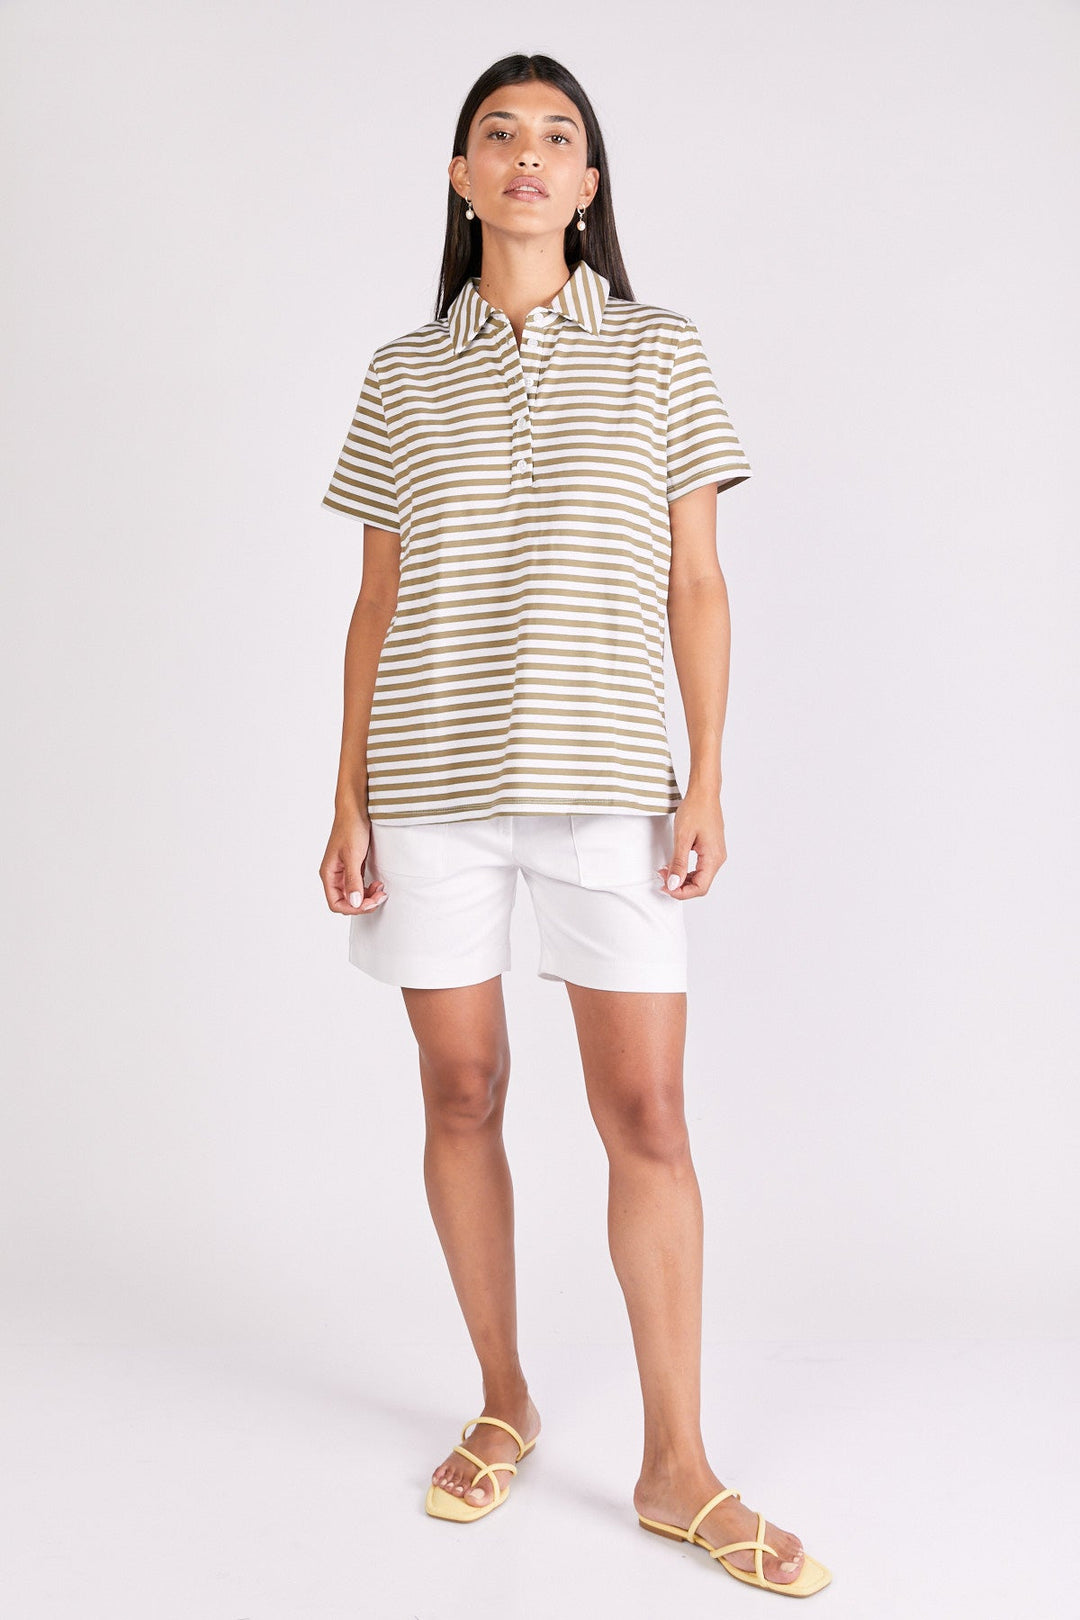 חולצת פולו הופמן בדוגמת פסים חום/לבן - Monochrome